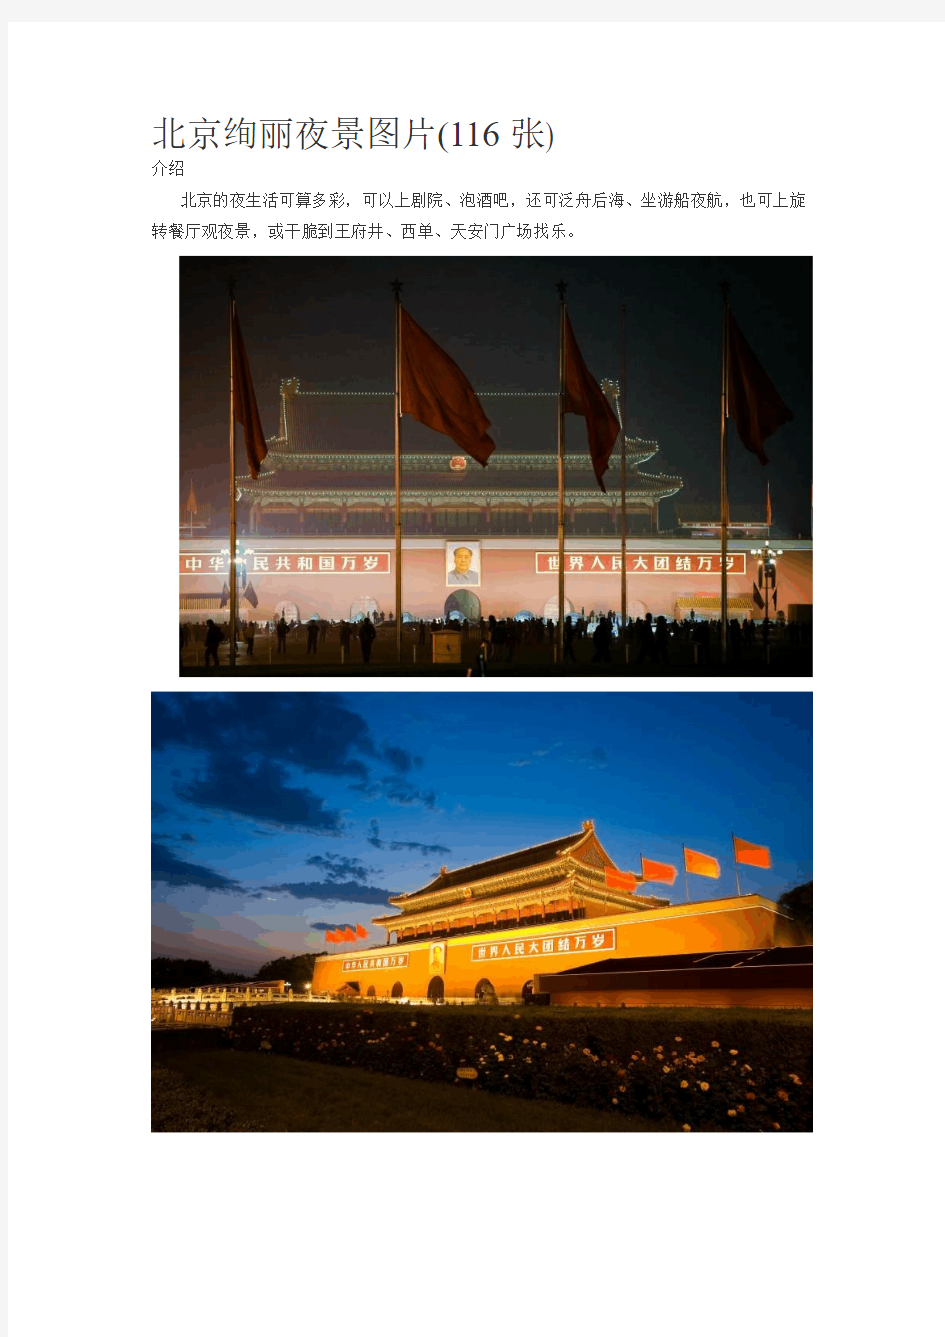 北京绚丽夜景图片(116张)